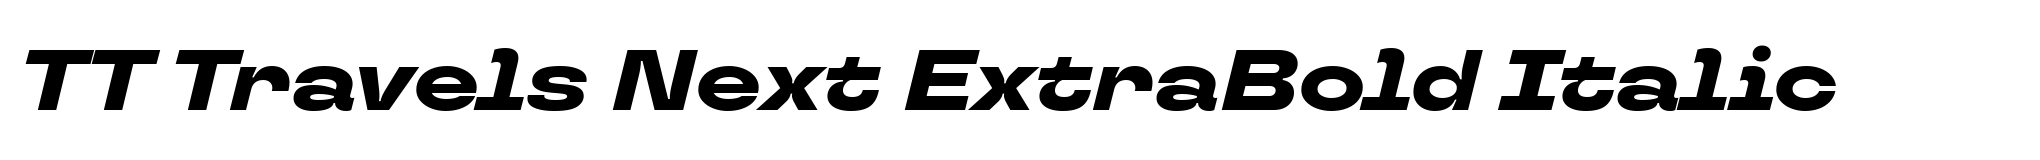 TT Travels Next ExtraBold Italic image